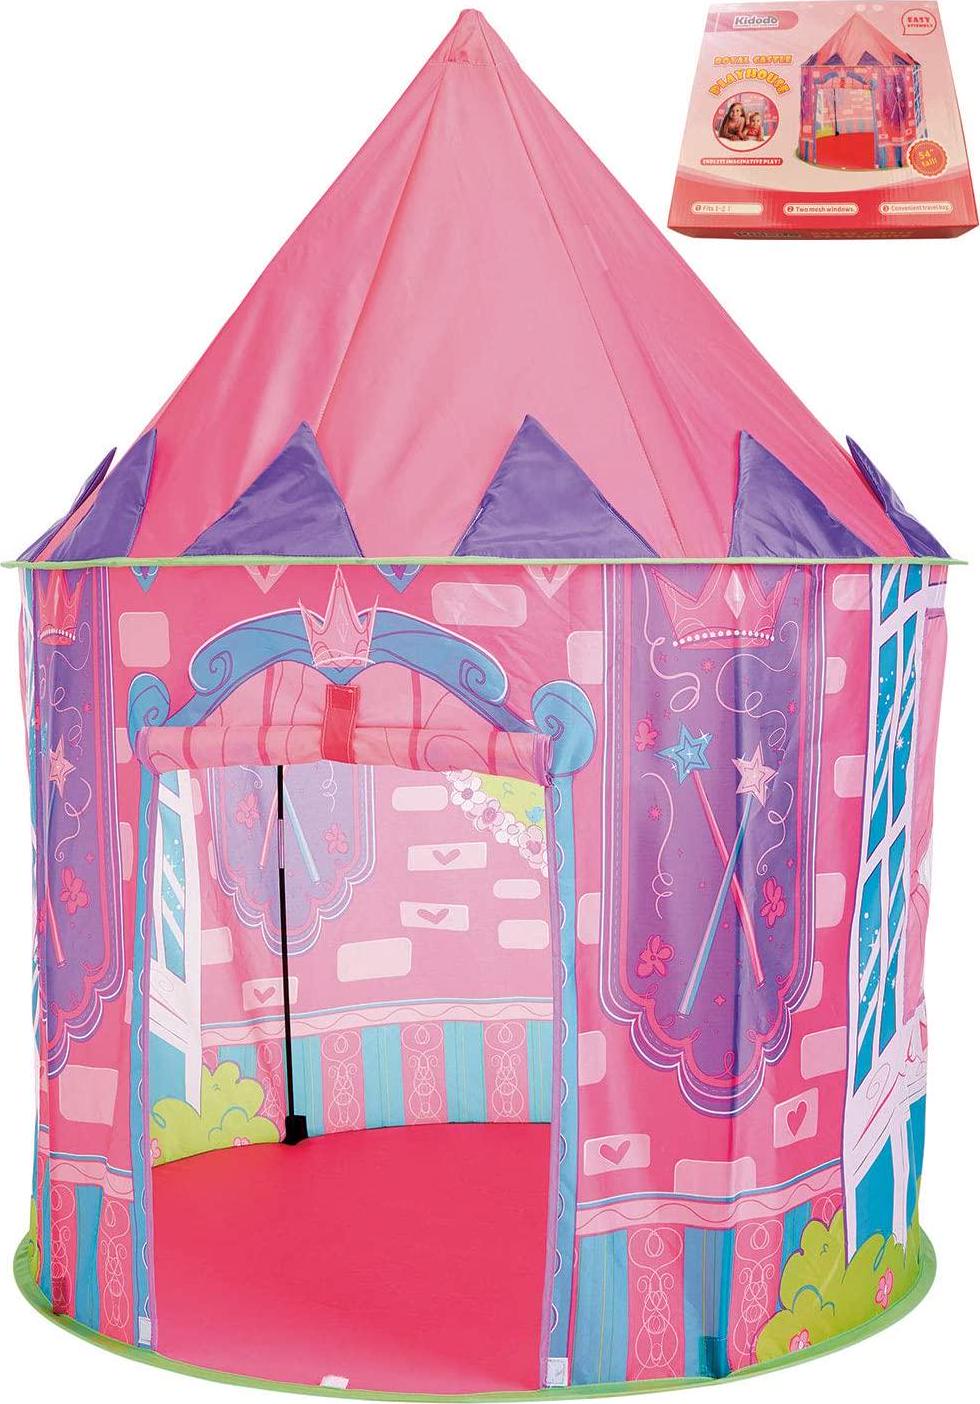 Kidodo, Kidodo Play Tent for Kids Toy Children Pop Up Tent Kids Playhouse Indoor Den